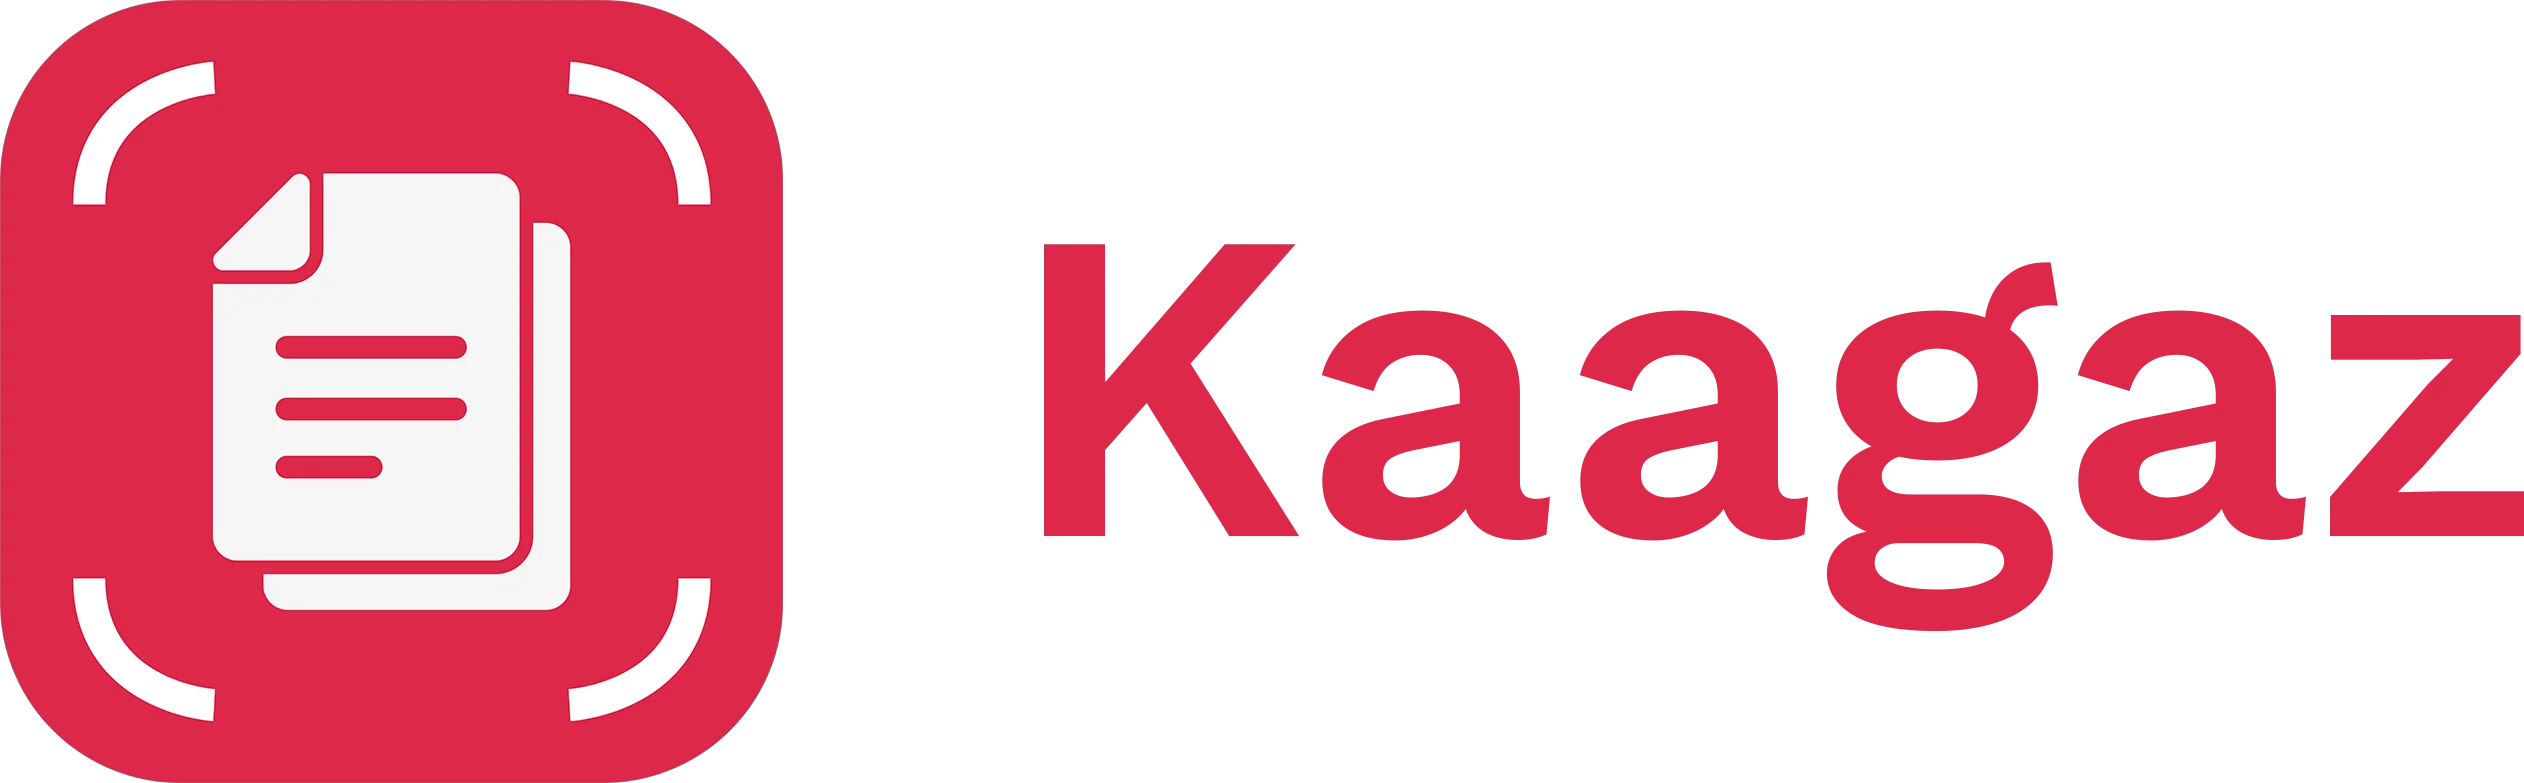 Kaagaz Logo